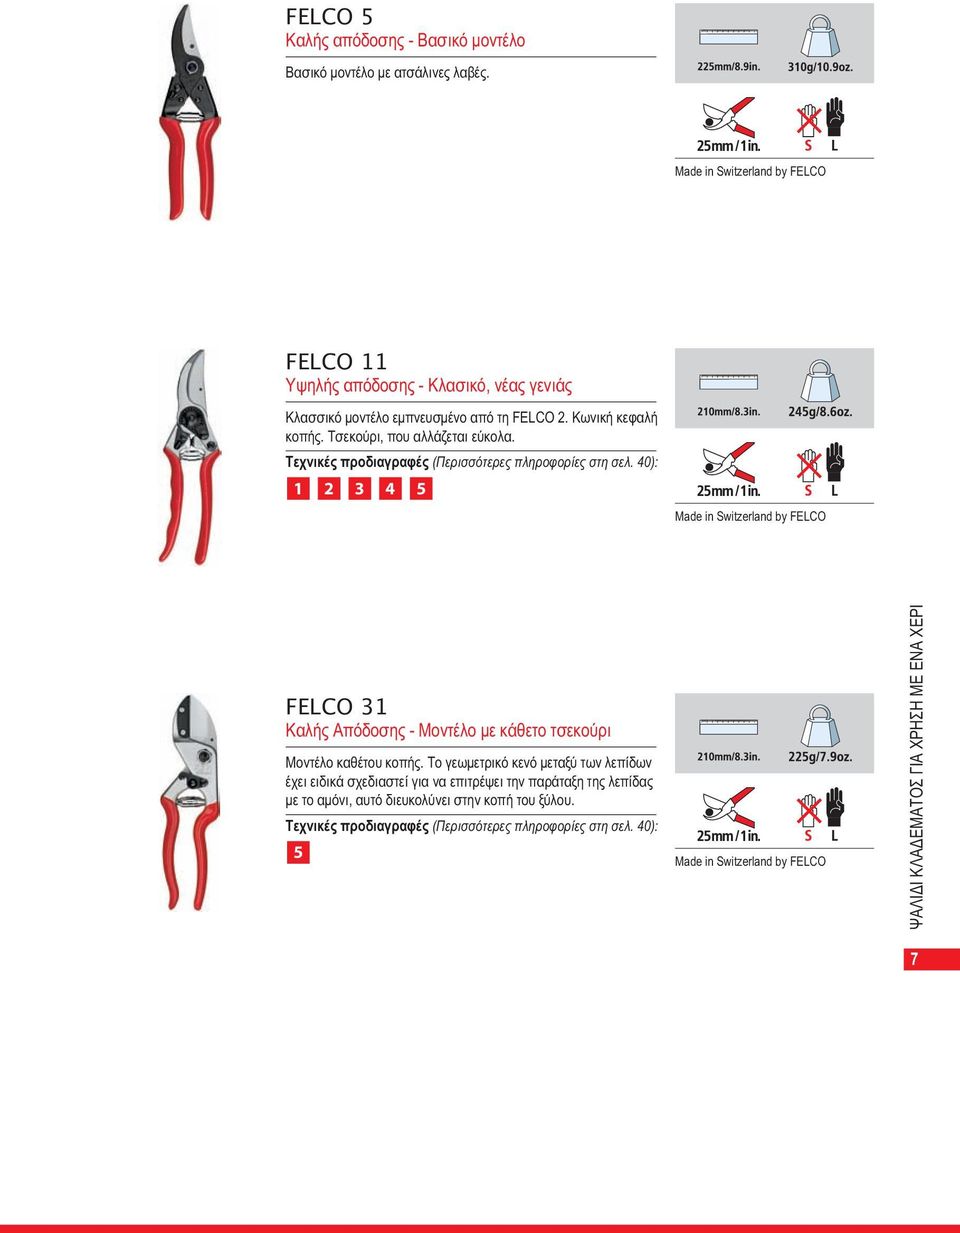 Τεχνικές προδιαγραφές (Περισσότερες πληροφορίες στη σελ. 40): 1 2 3 4 5 Made in Switzerland by FELCO FELCO 31 Καλής Απόδοσης - Μοντέλο με κάθετο τσεκούρι Μοντέλο καθέτου κοπής.